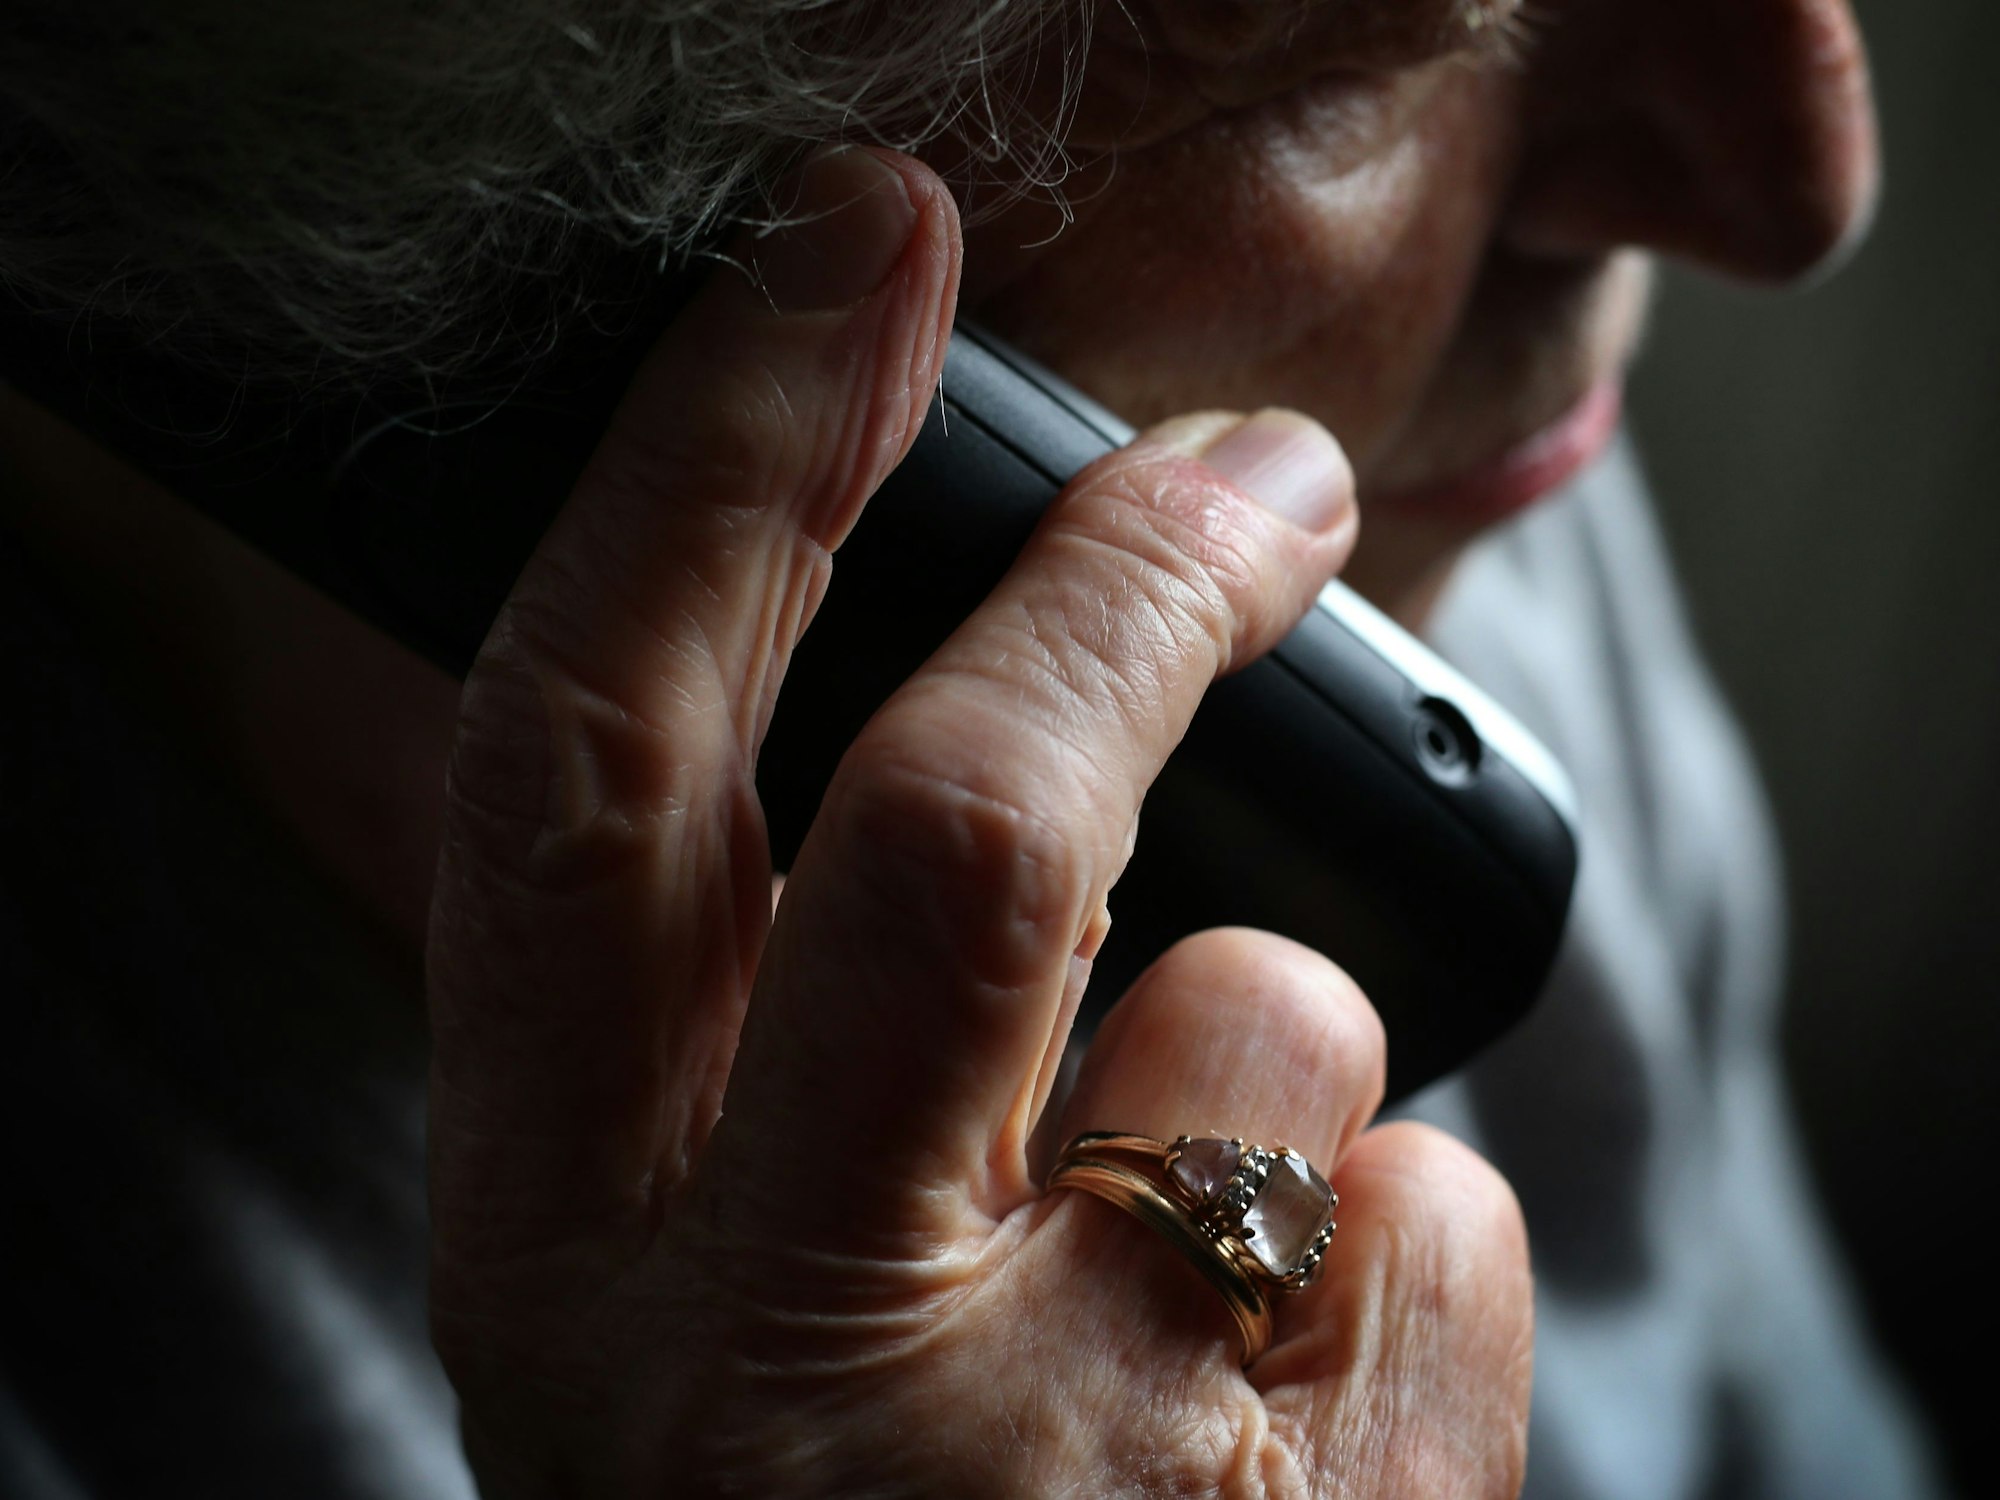 Eine ältere Frau telefoniert mit einem schnurlosen Festnetztelefon.